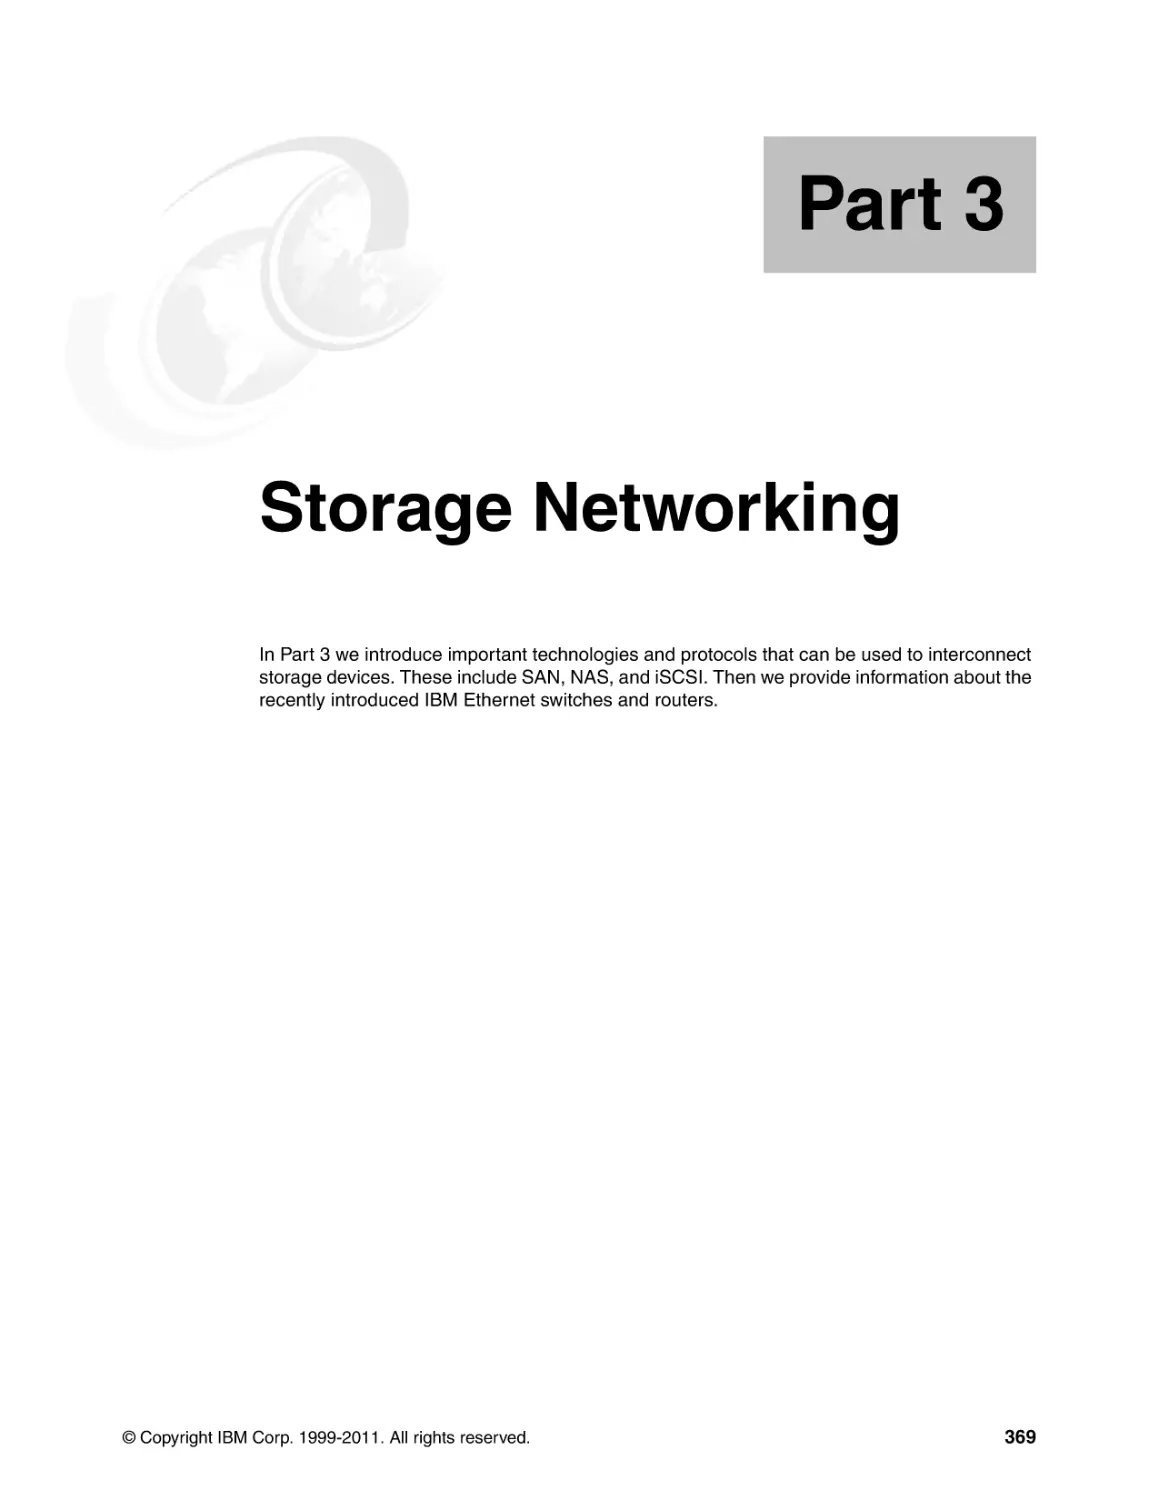 Part 3 Storage Networking